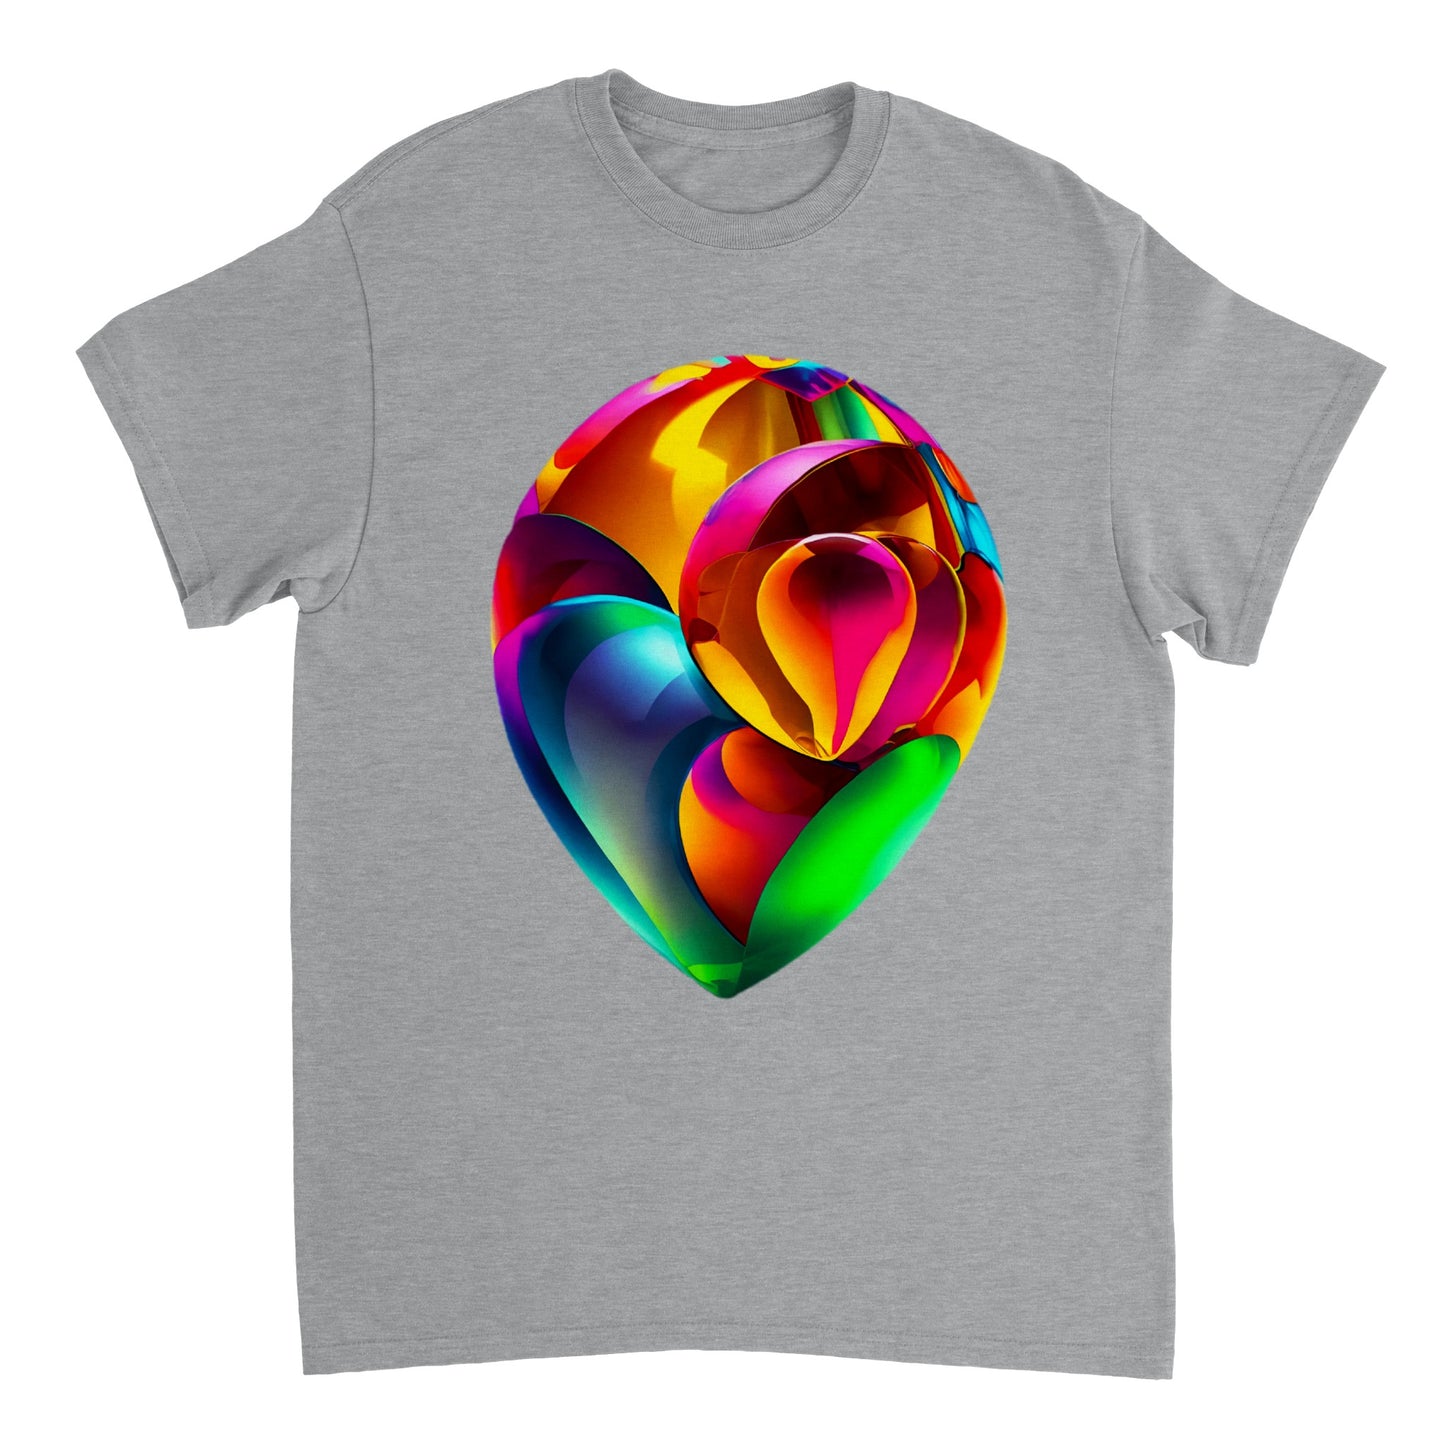 Love Heart - Heavyweight Unisex Crewneck T-shirt 100